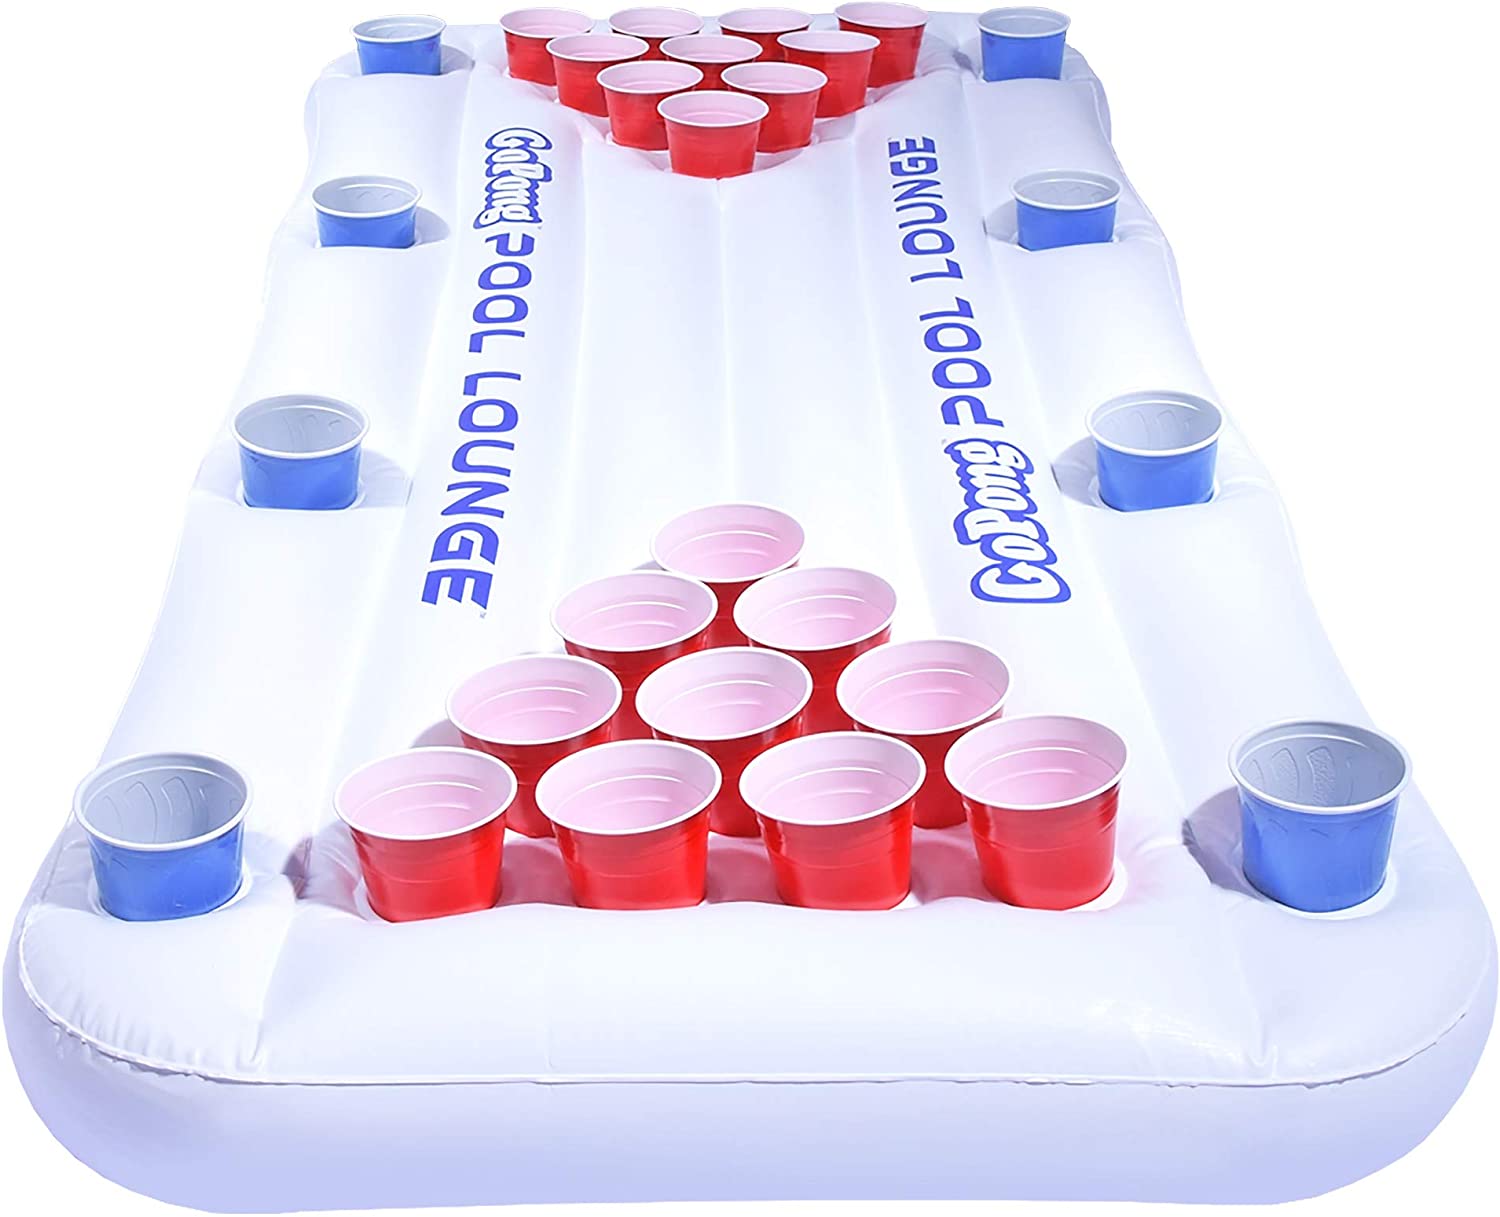 GoPong 3-In-1 Plastic Beer Pong Pool Game